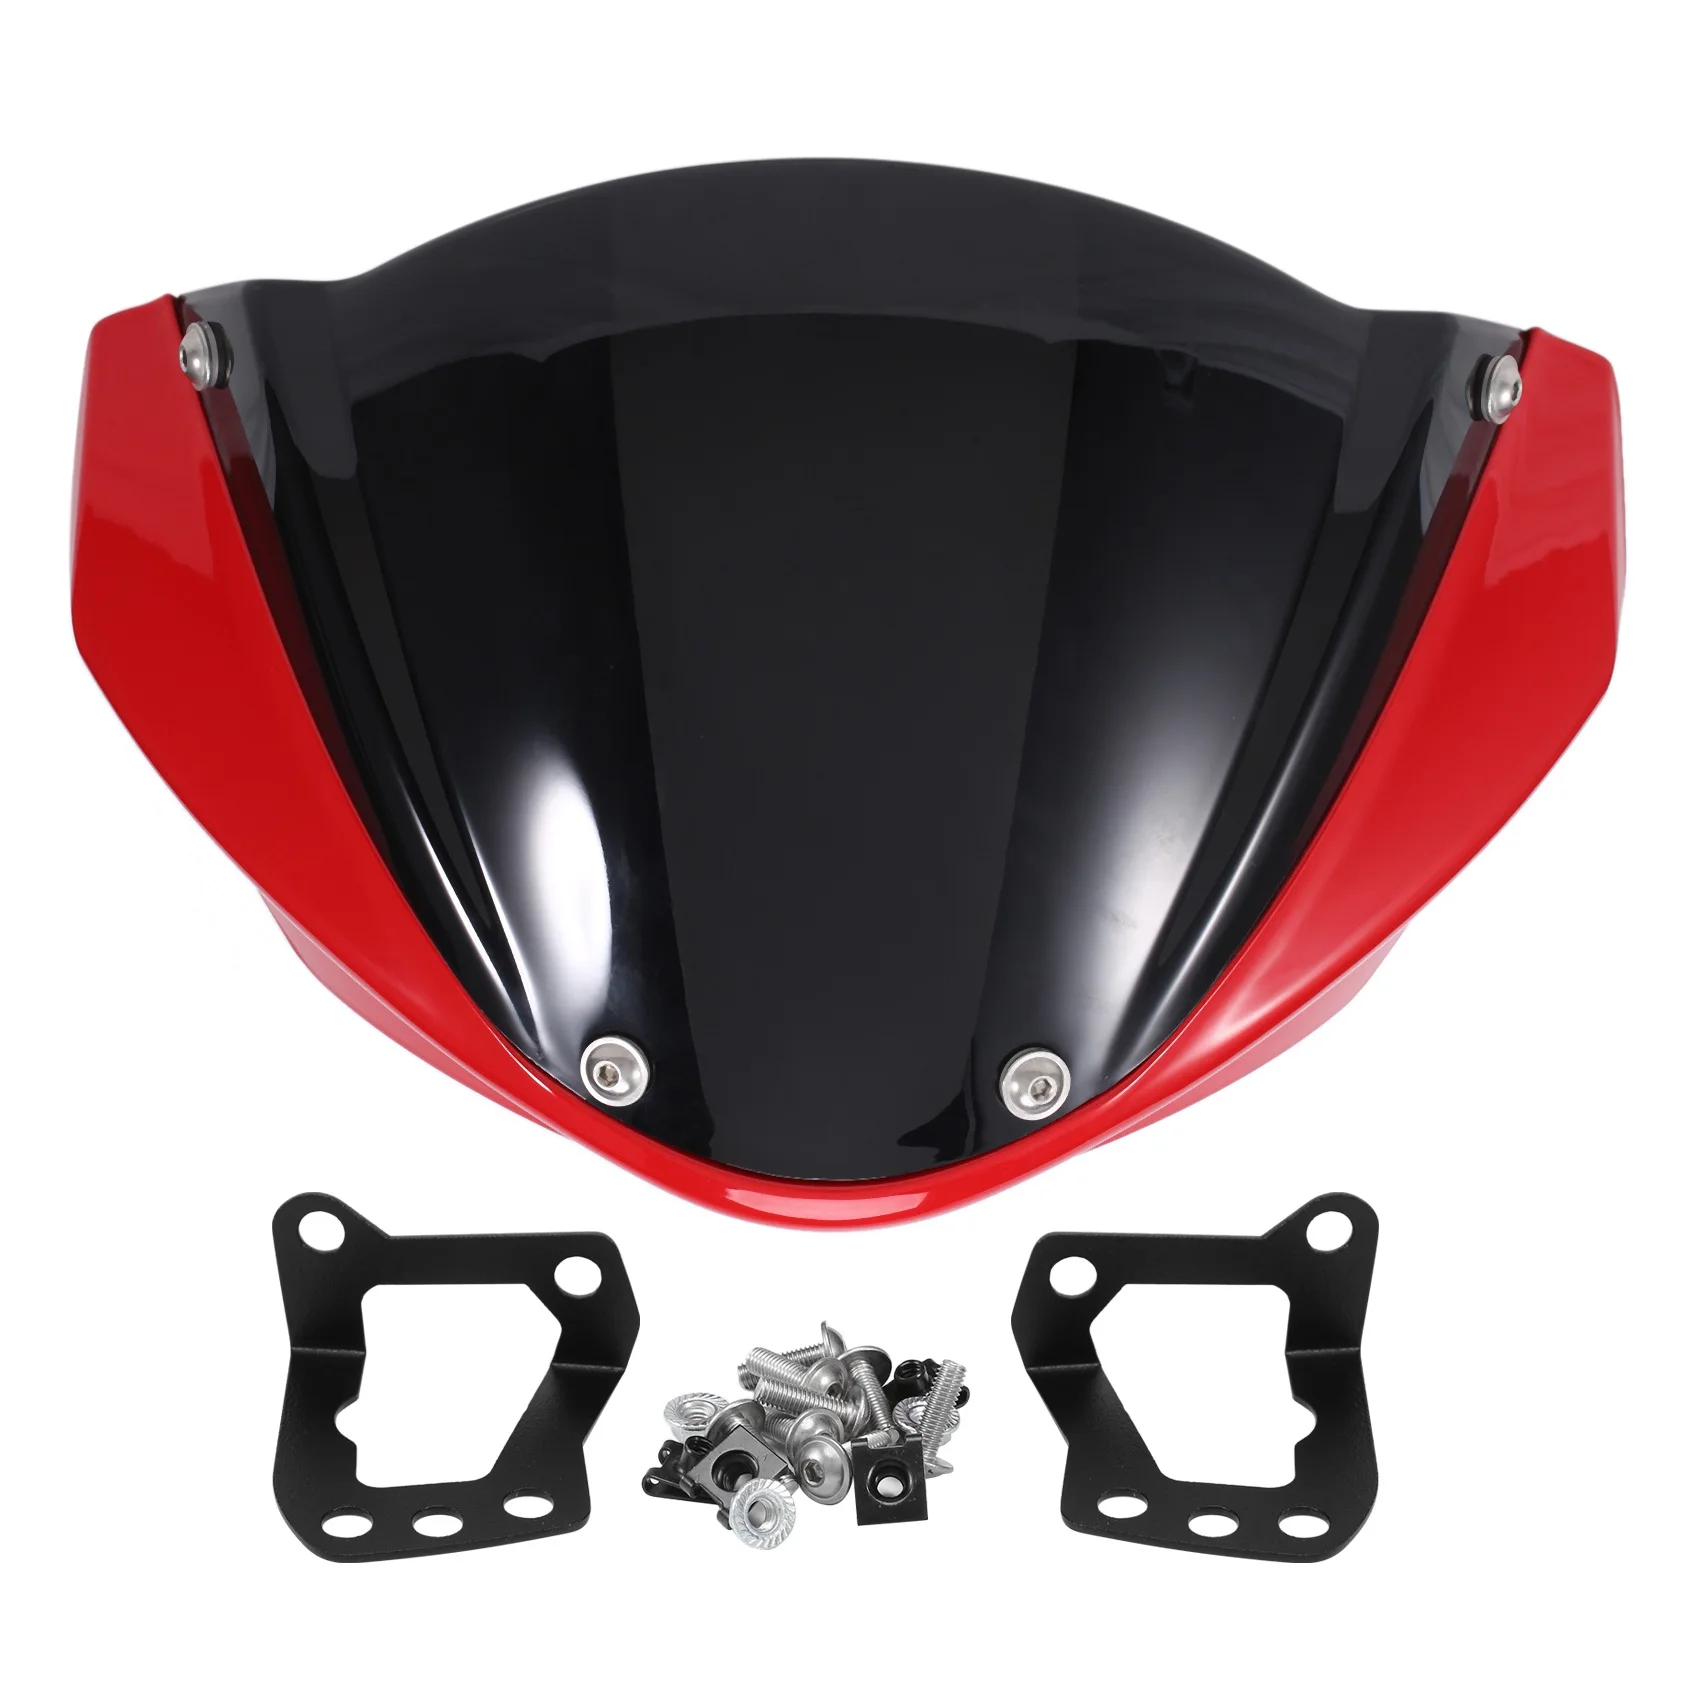 

Крышка лобового стекла для Ducati Monster 696 795 796 M1100, модификация мотоцикла